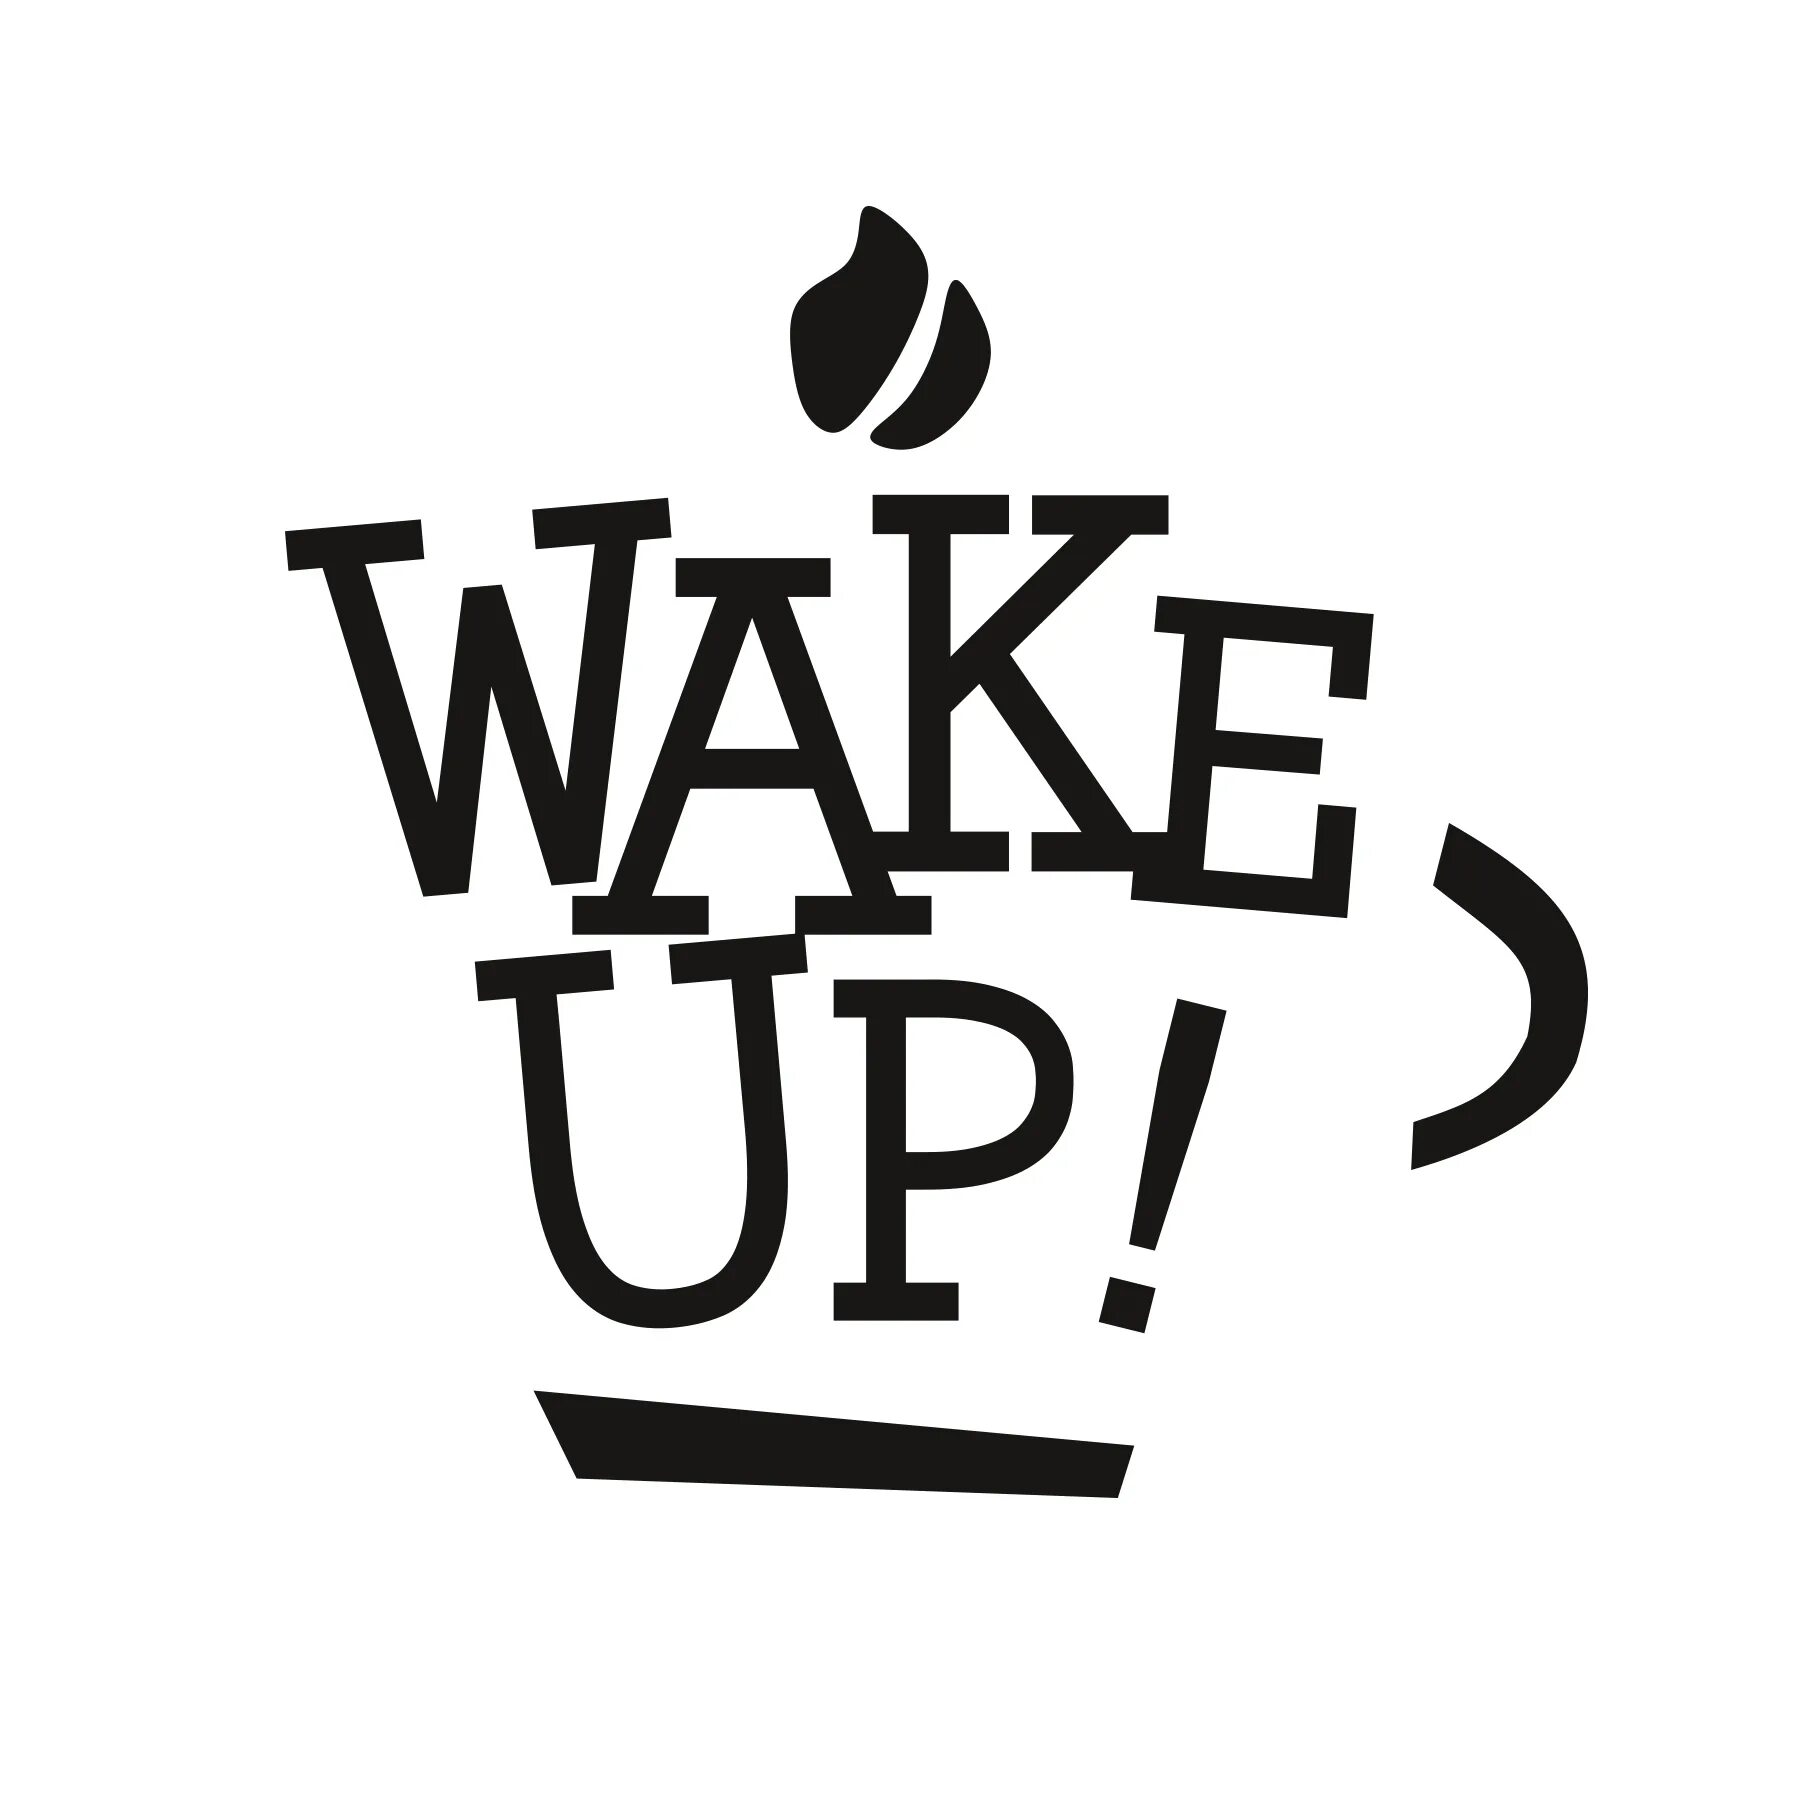 Wake up felix. Wake up кофейня. Wake up надпись. Логотип вверх. Wake up картинка.